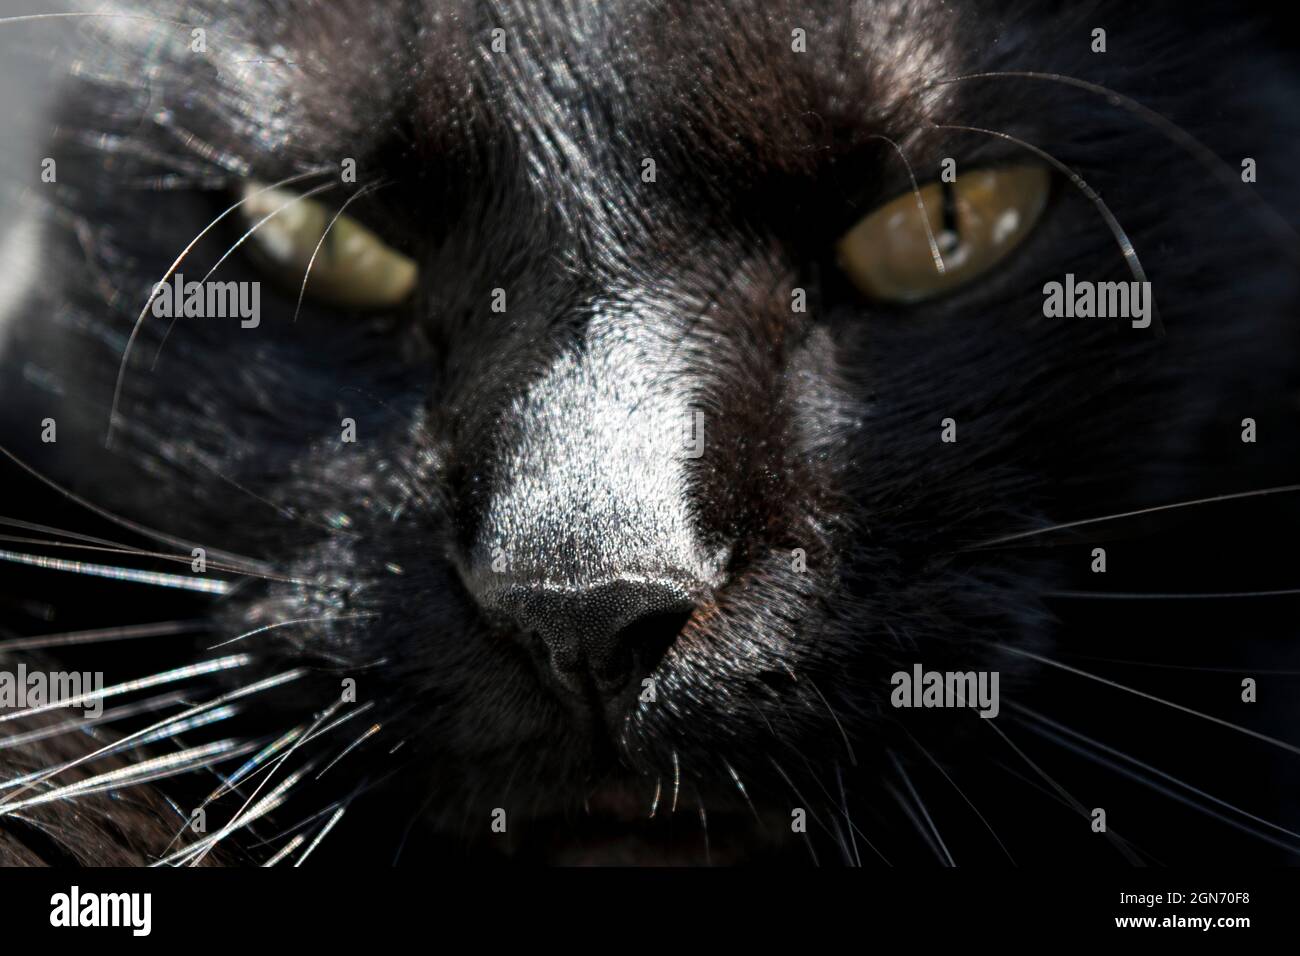 Jolie face noire de chat regardant directement dans l'appareil photo.Gros plan de la tête. Banque D'Images